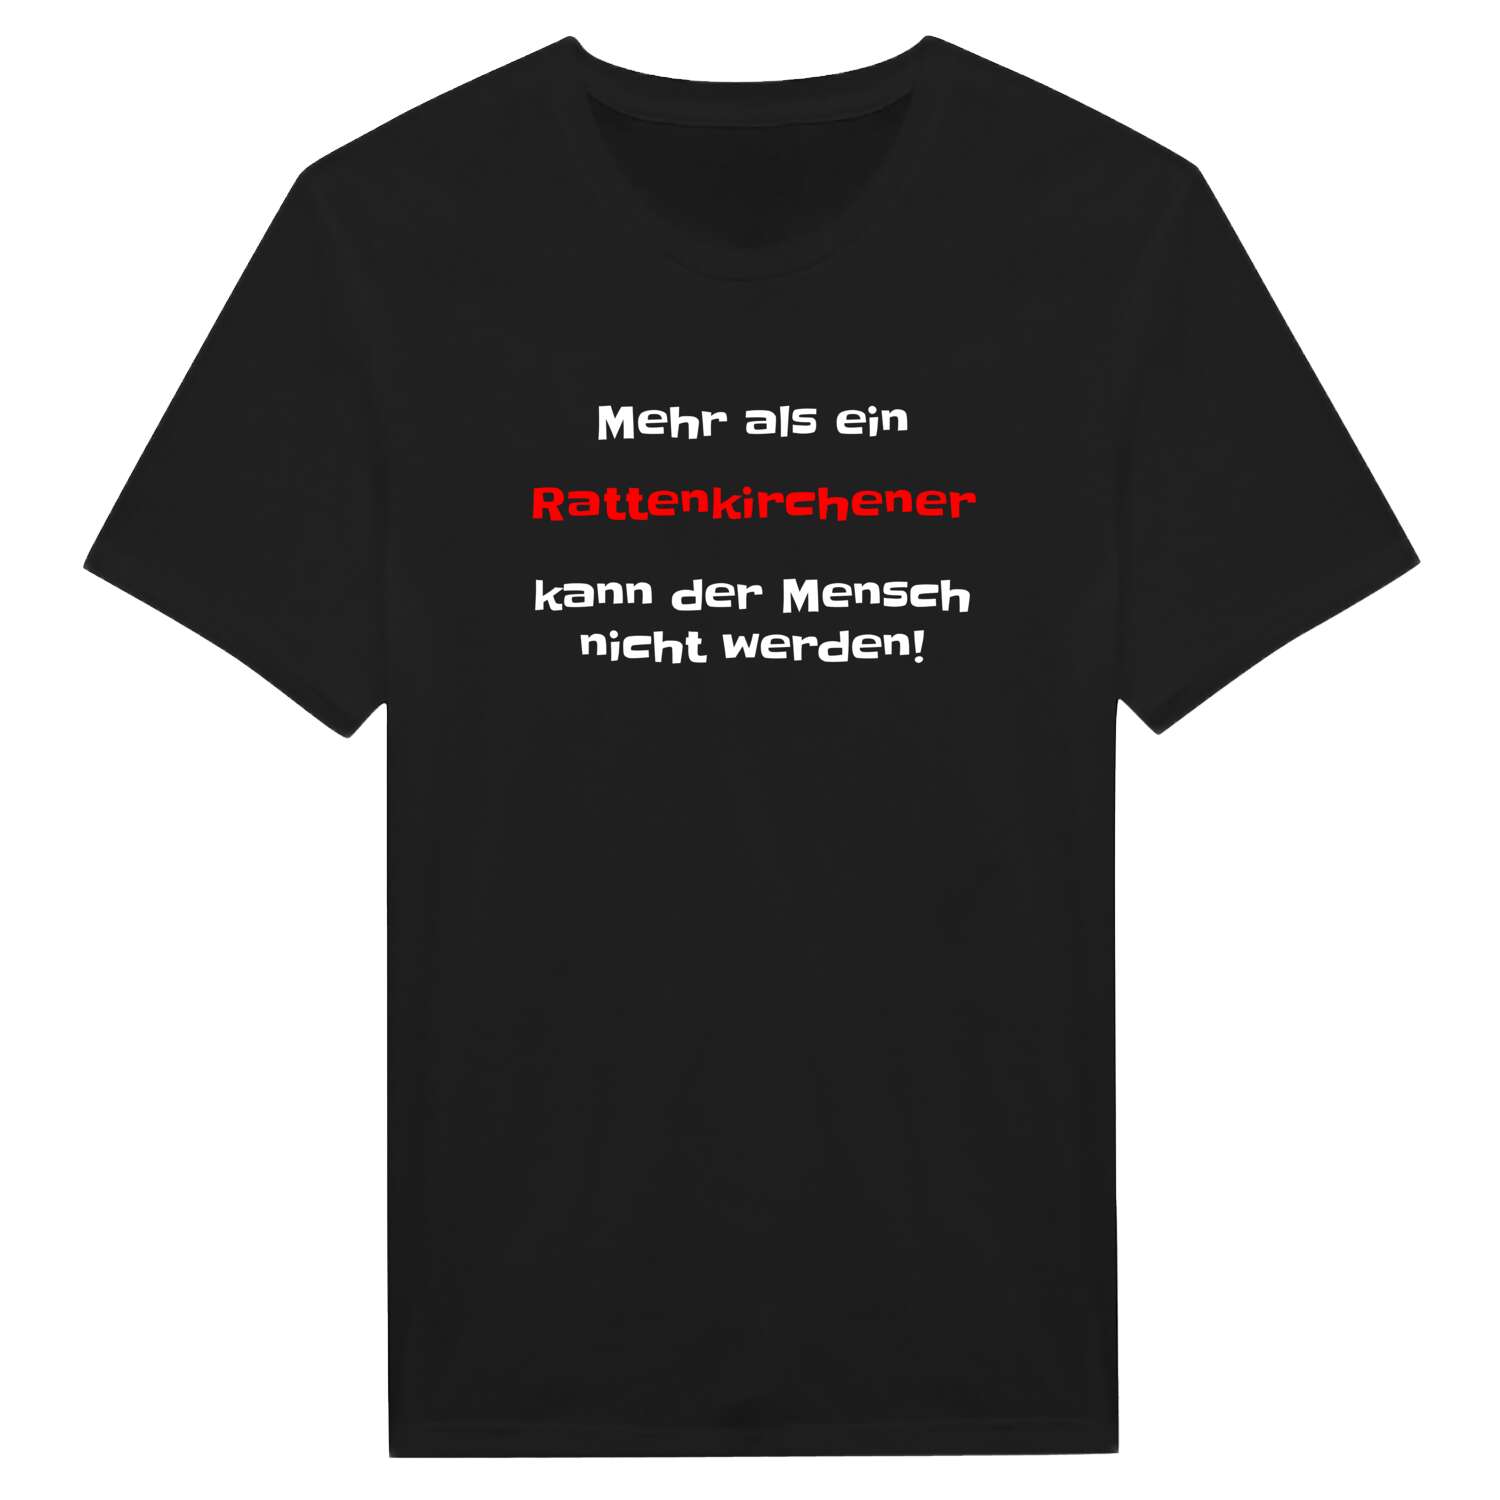 Rattenkirchen T-Shirt »Mehr als ein«